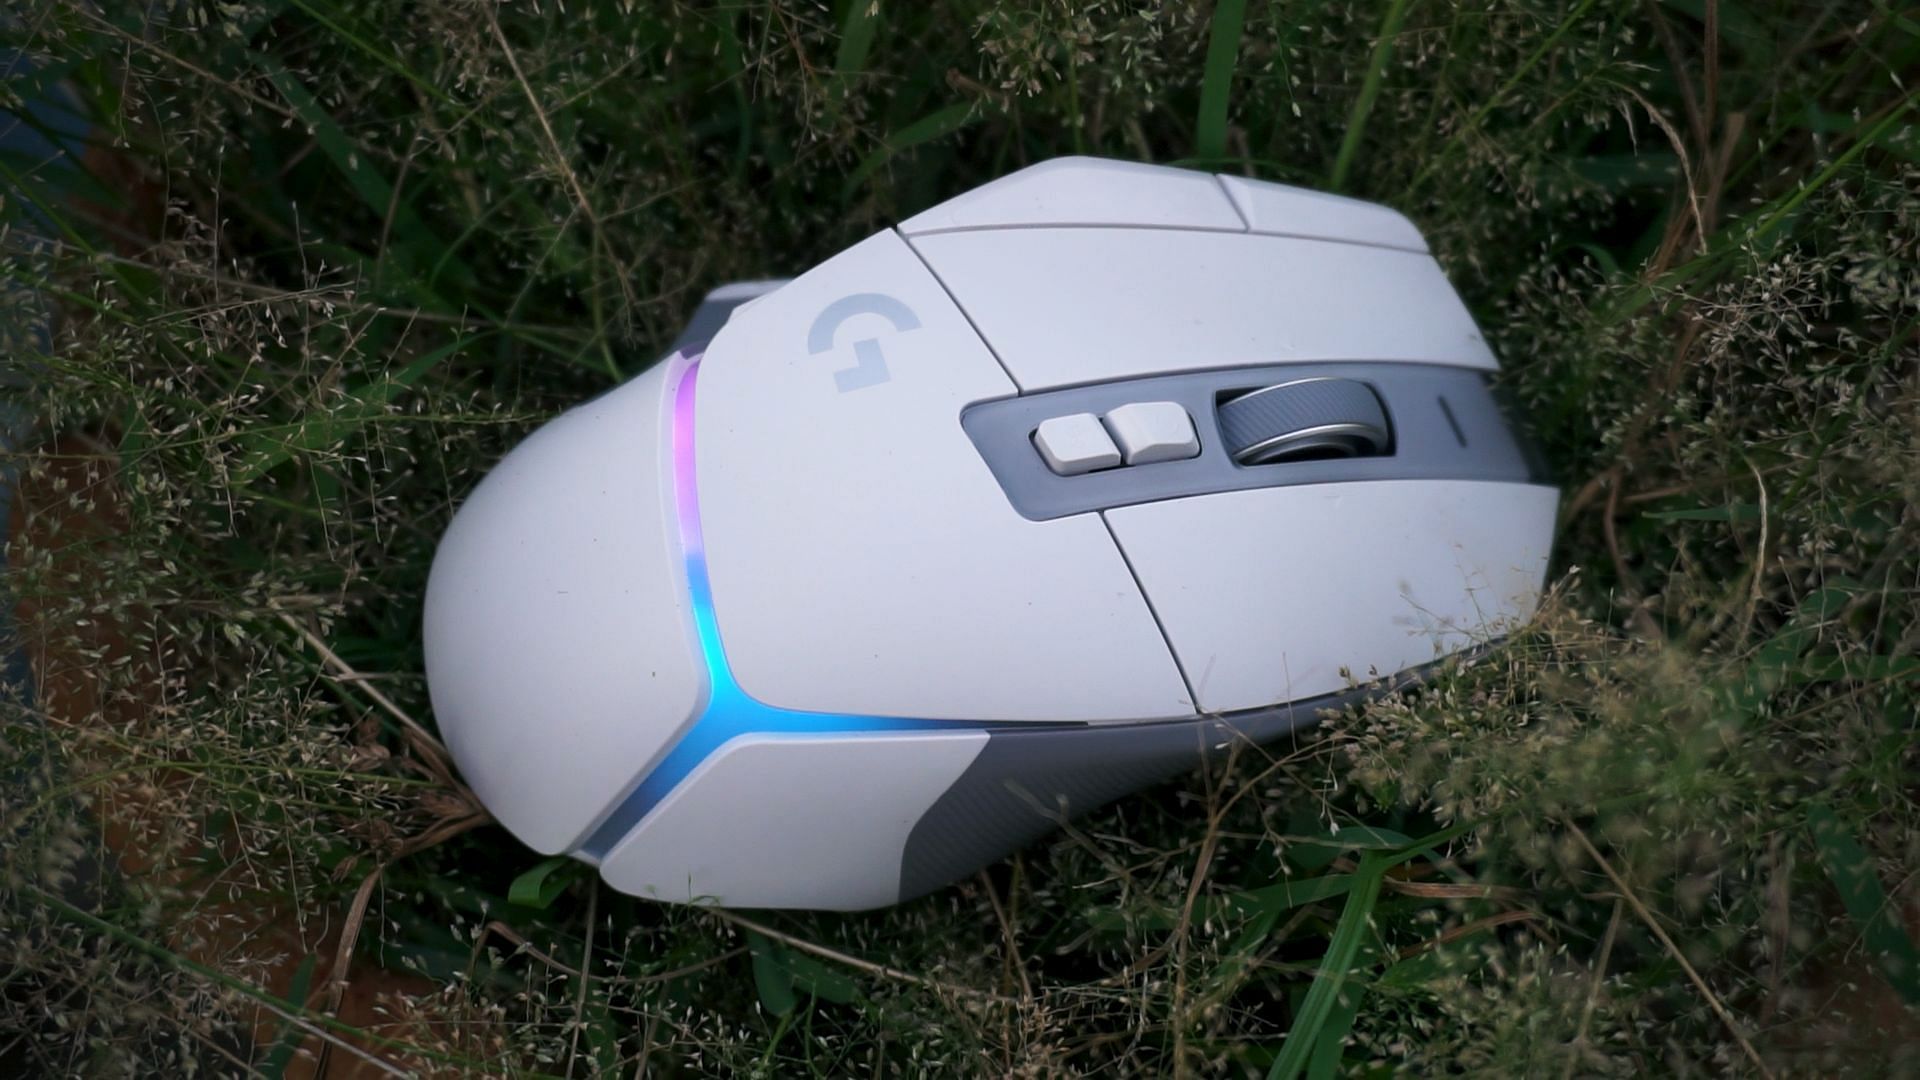 The G502 X with RGB turned on (Image via Sportskeeda)